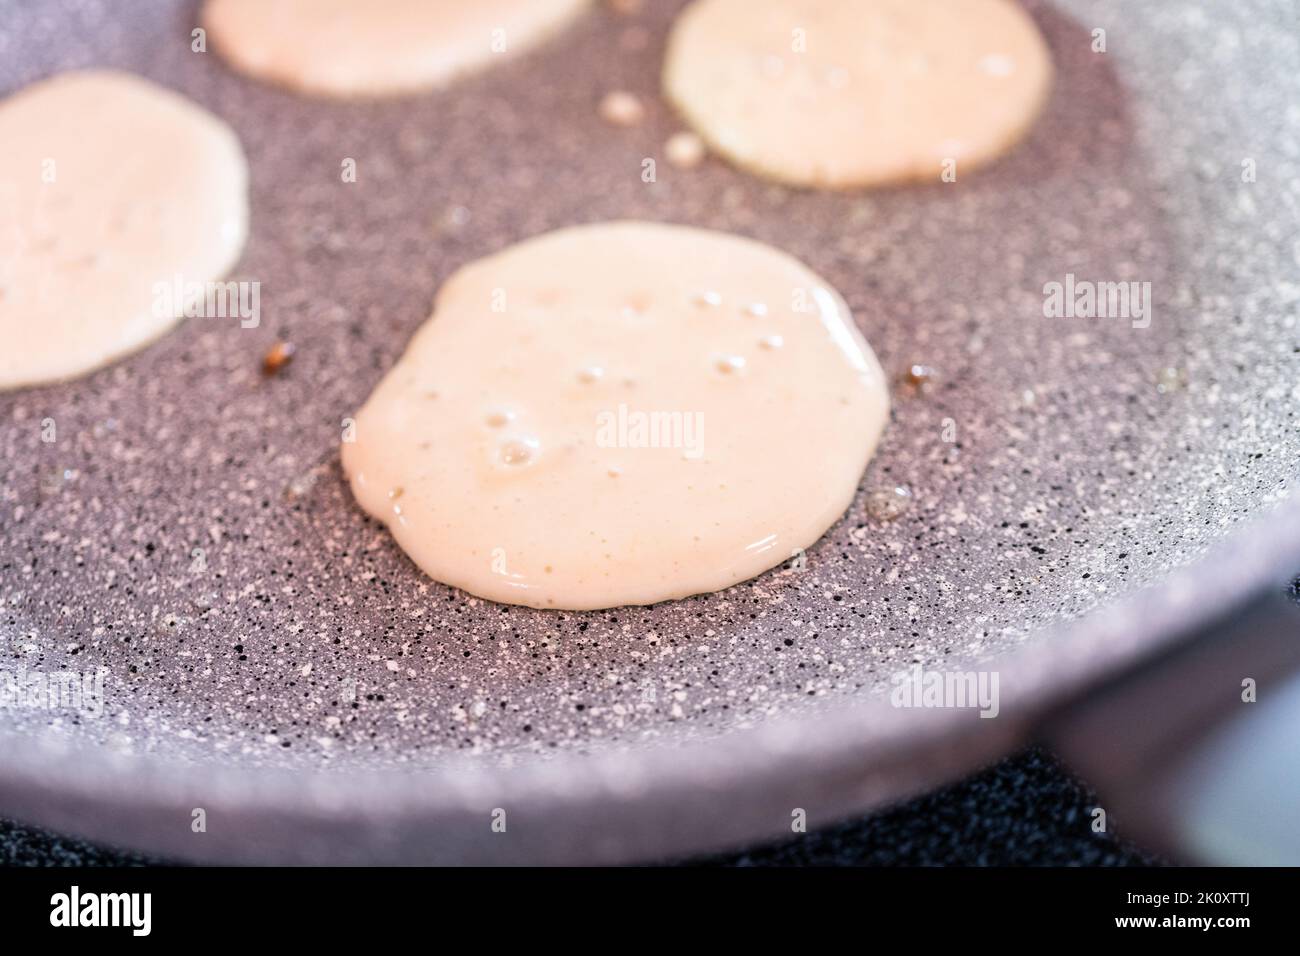 Making pancakes Stock Photo